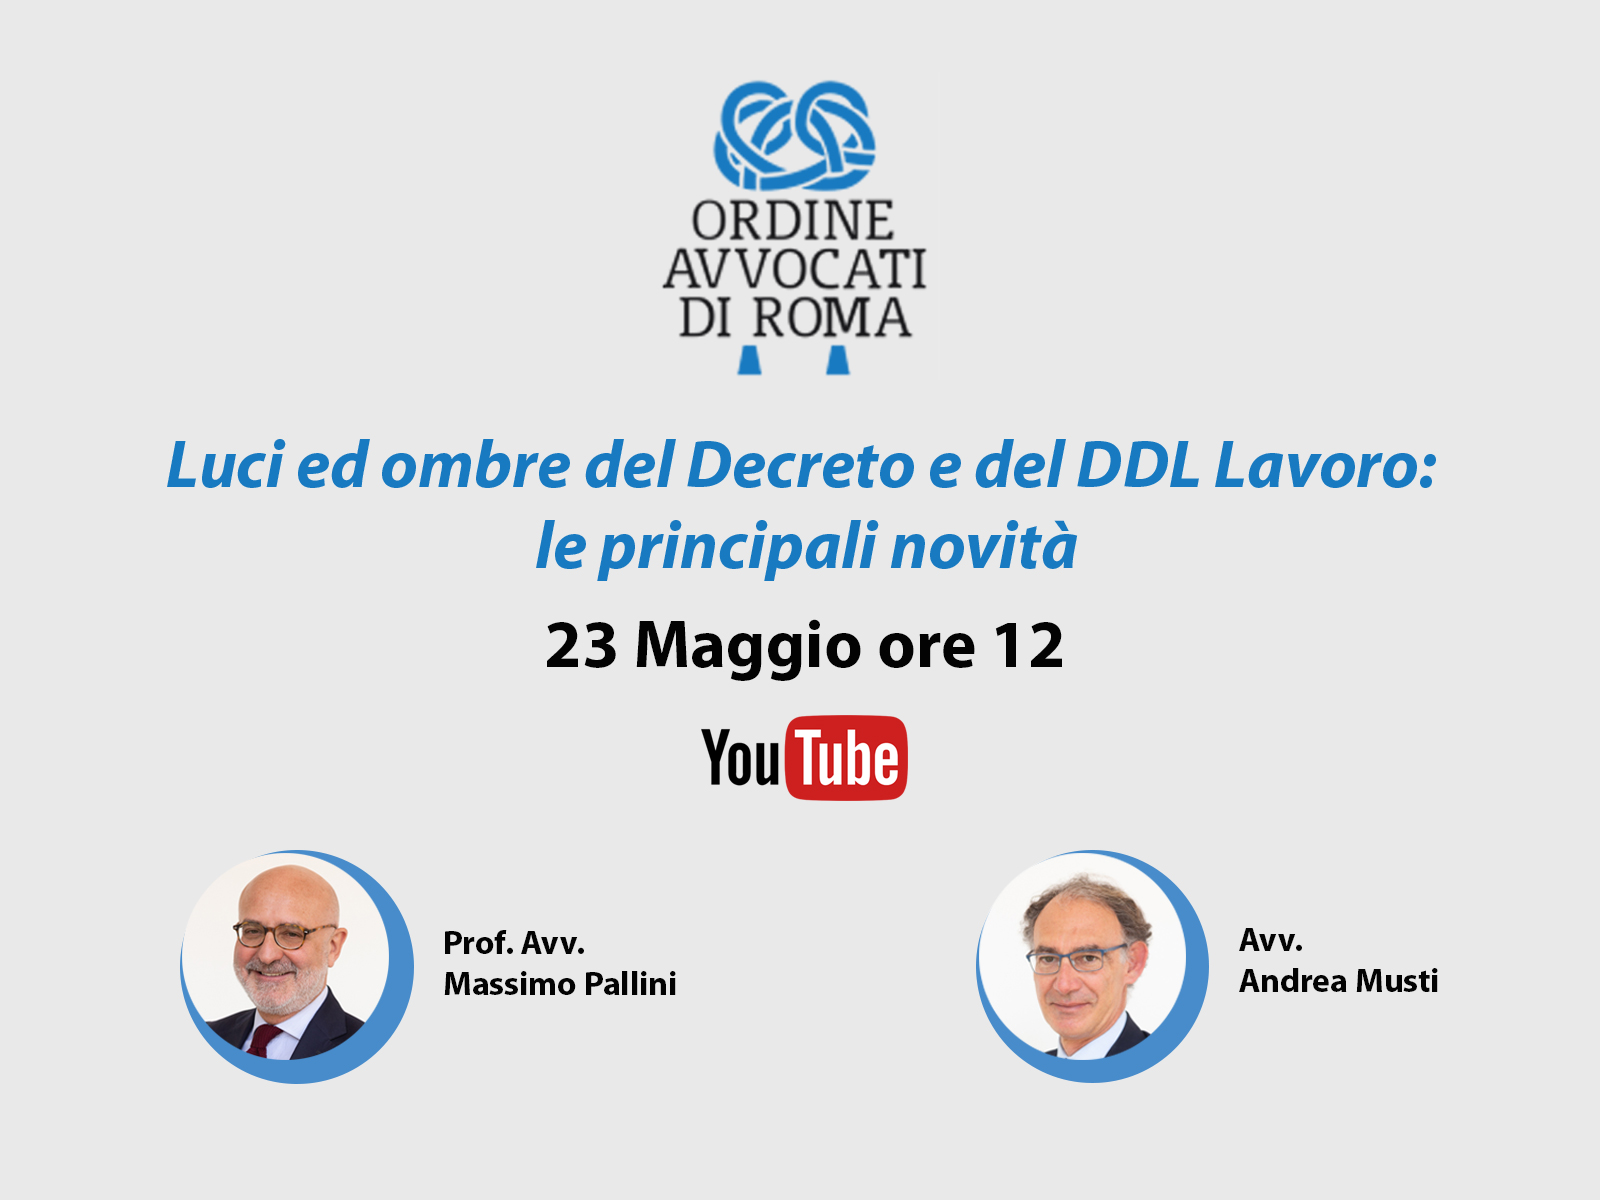 Decreto e DDL Lavoro: Massimo Pallini e Andrea Musti relatori per l’Ordine degli Avvocati di Roma